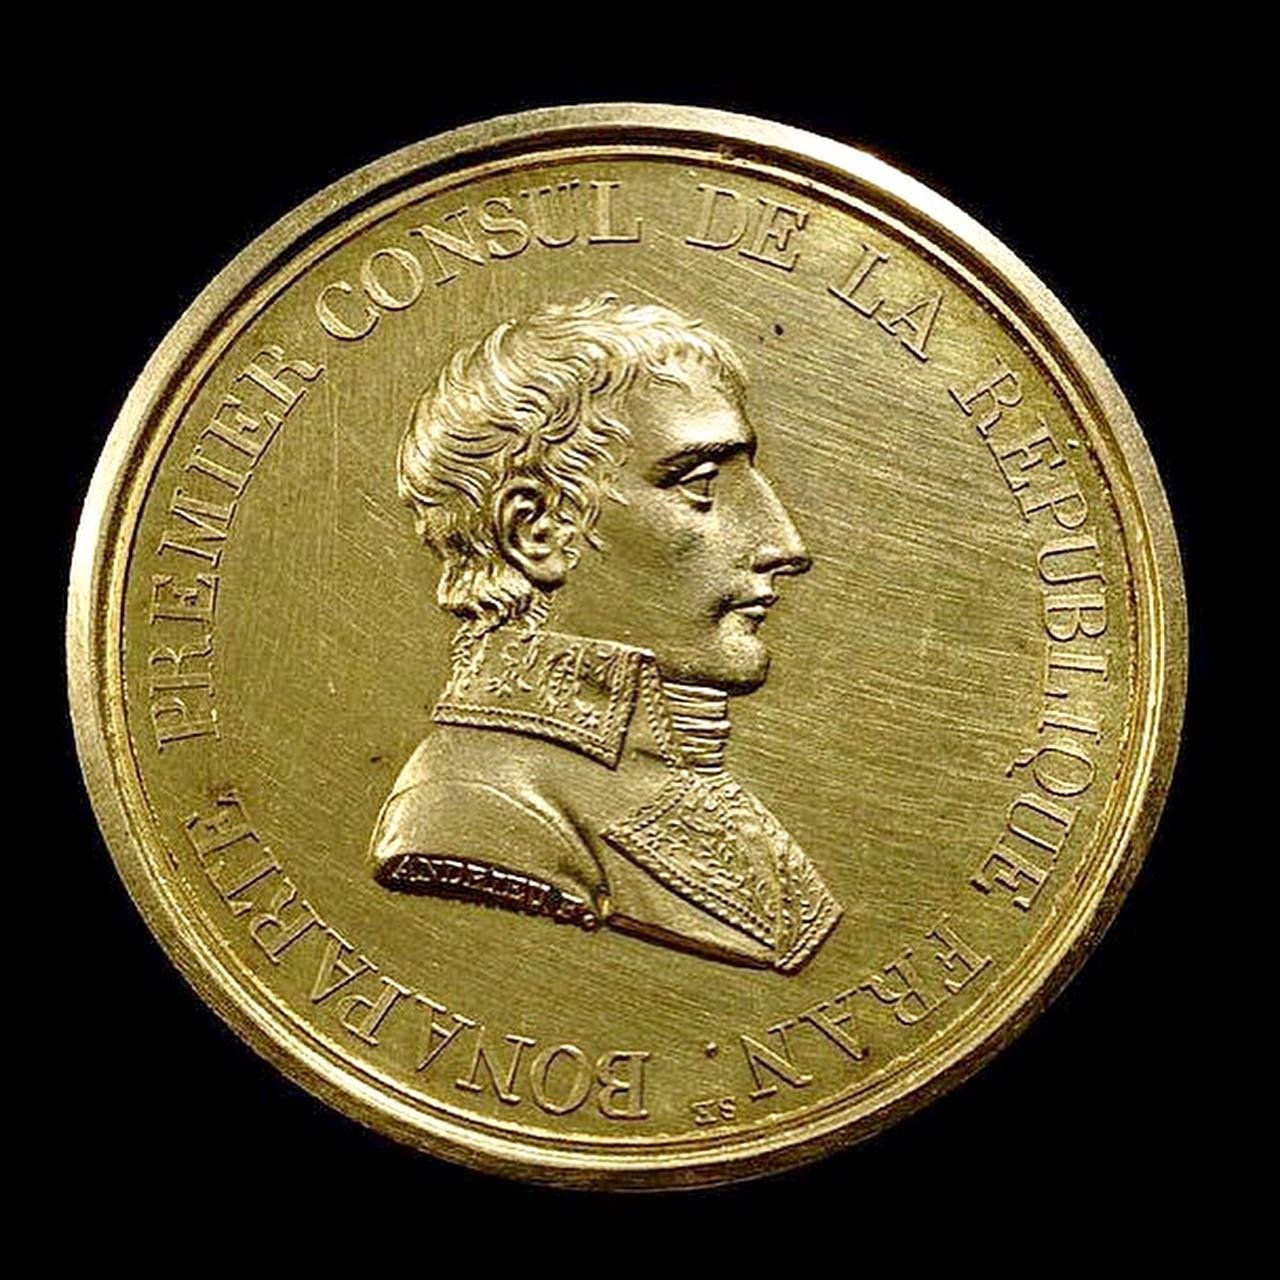 Napoleon-Coin-Luneville-Treaty.jpg